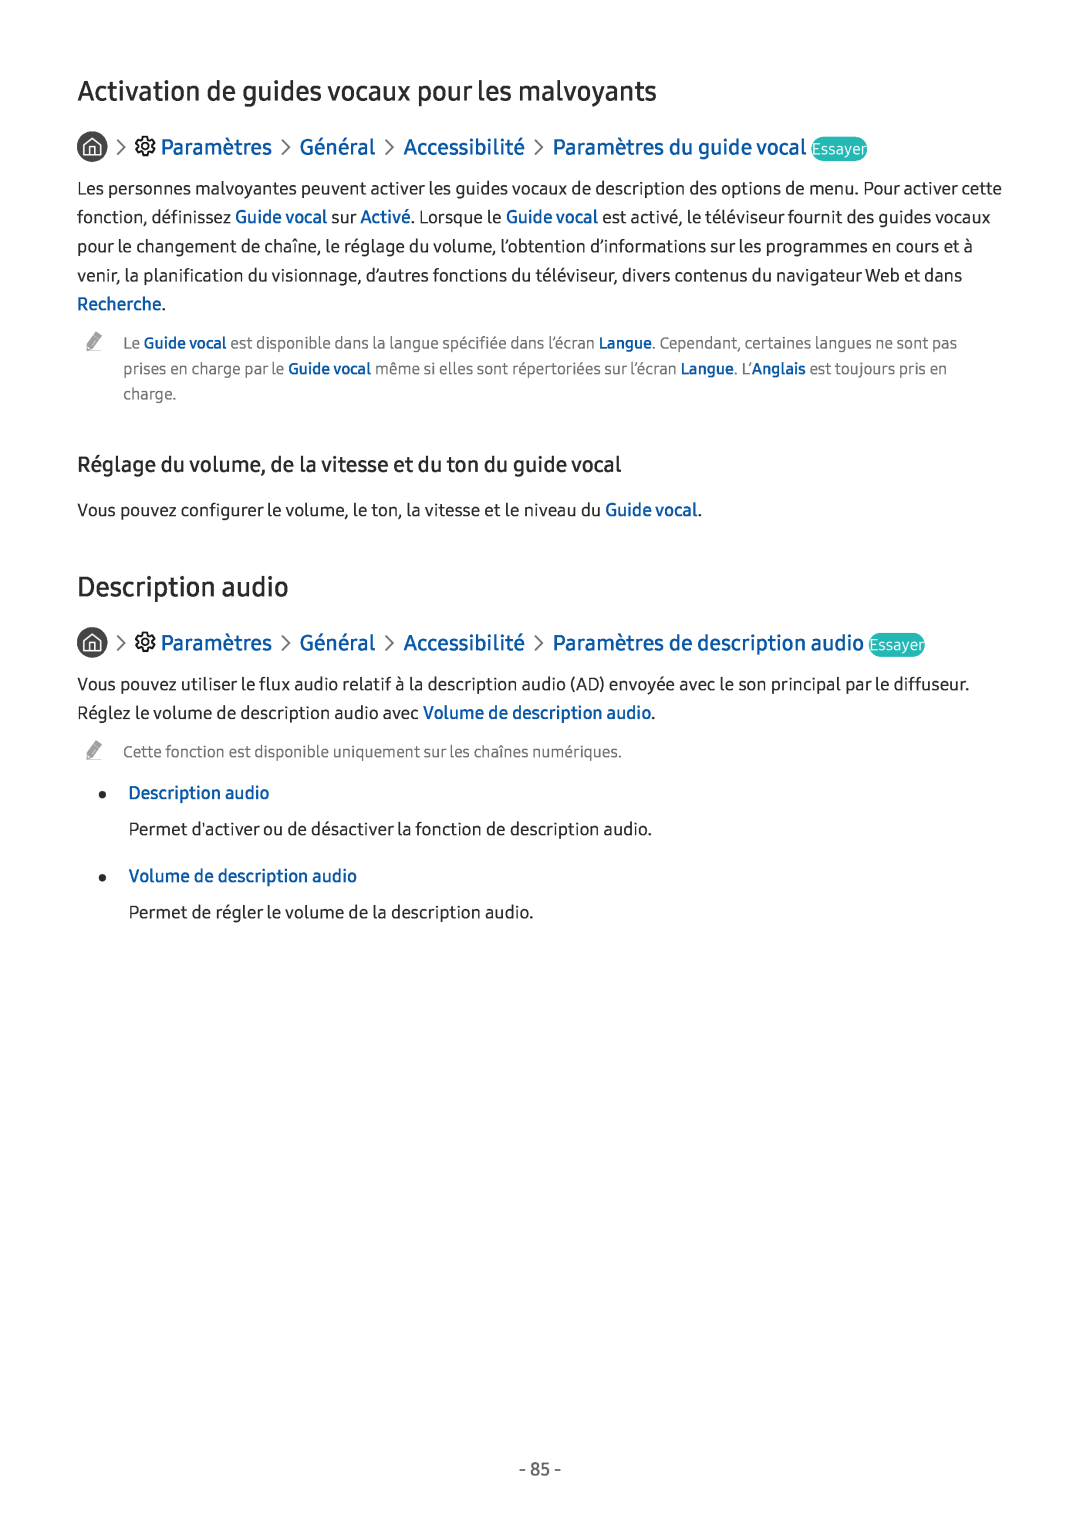 Samsung UE49MU6645UXXC Activation de guides vocaux pour les malvoyants, Description audio, Volume de description audio 